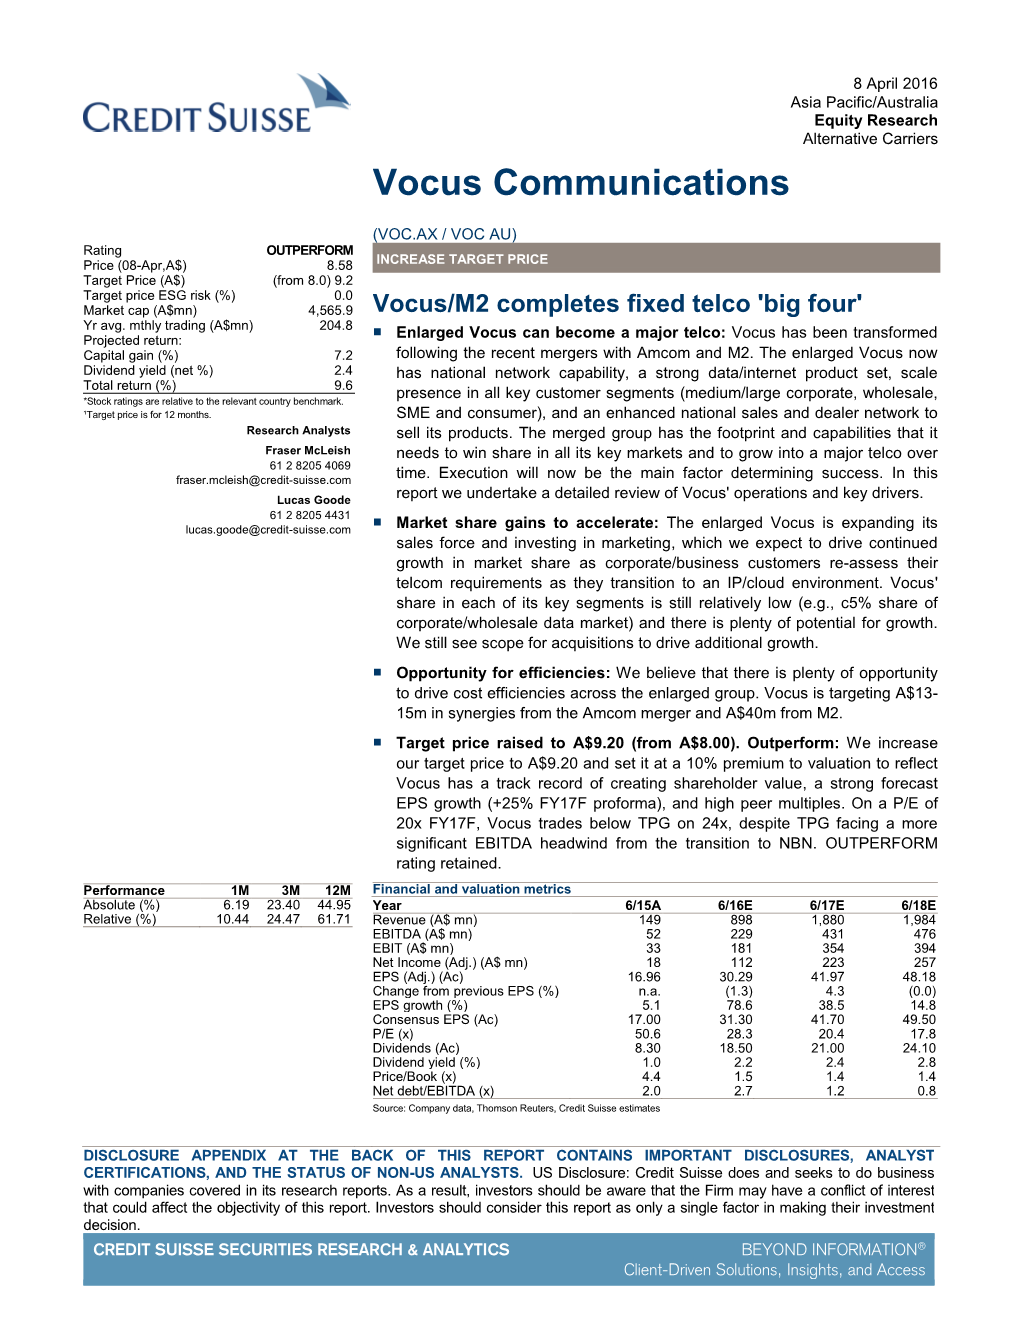 VOC.AX: Vocus/M2 Completes Fixed Telco 'Big Four'